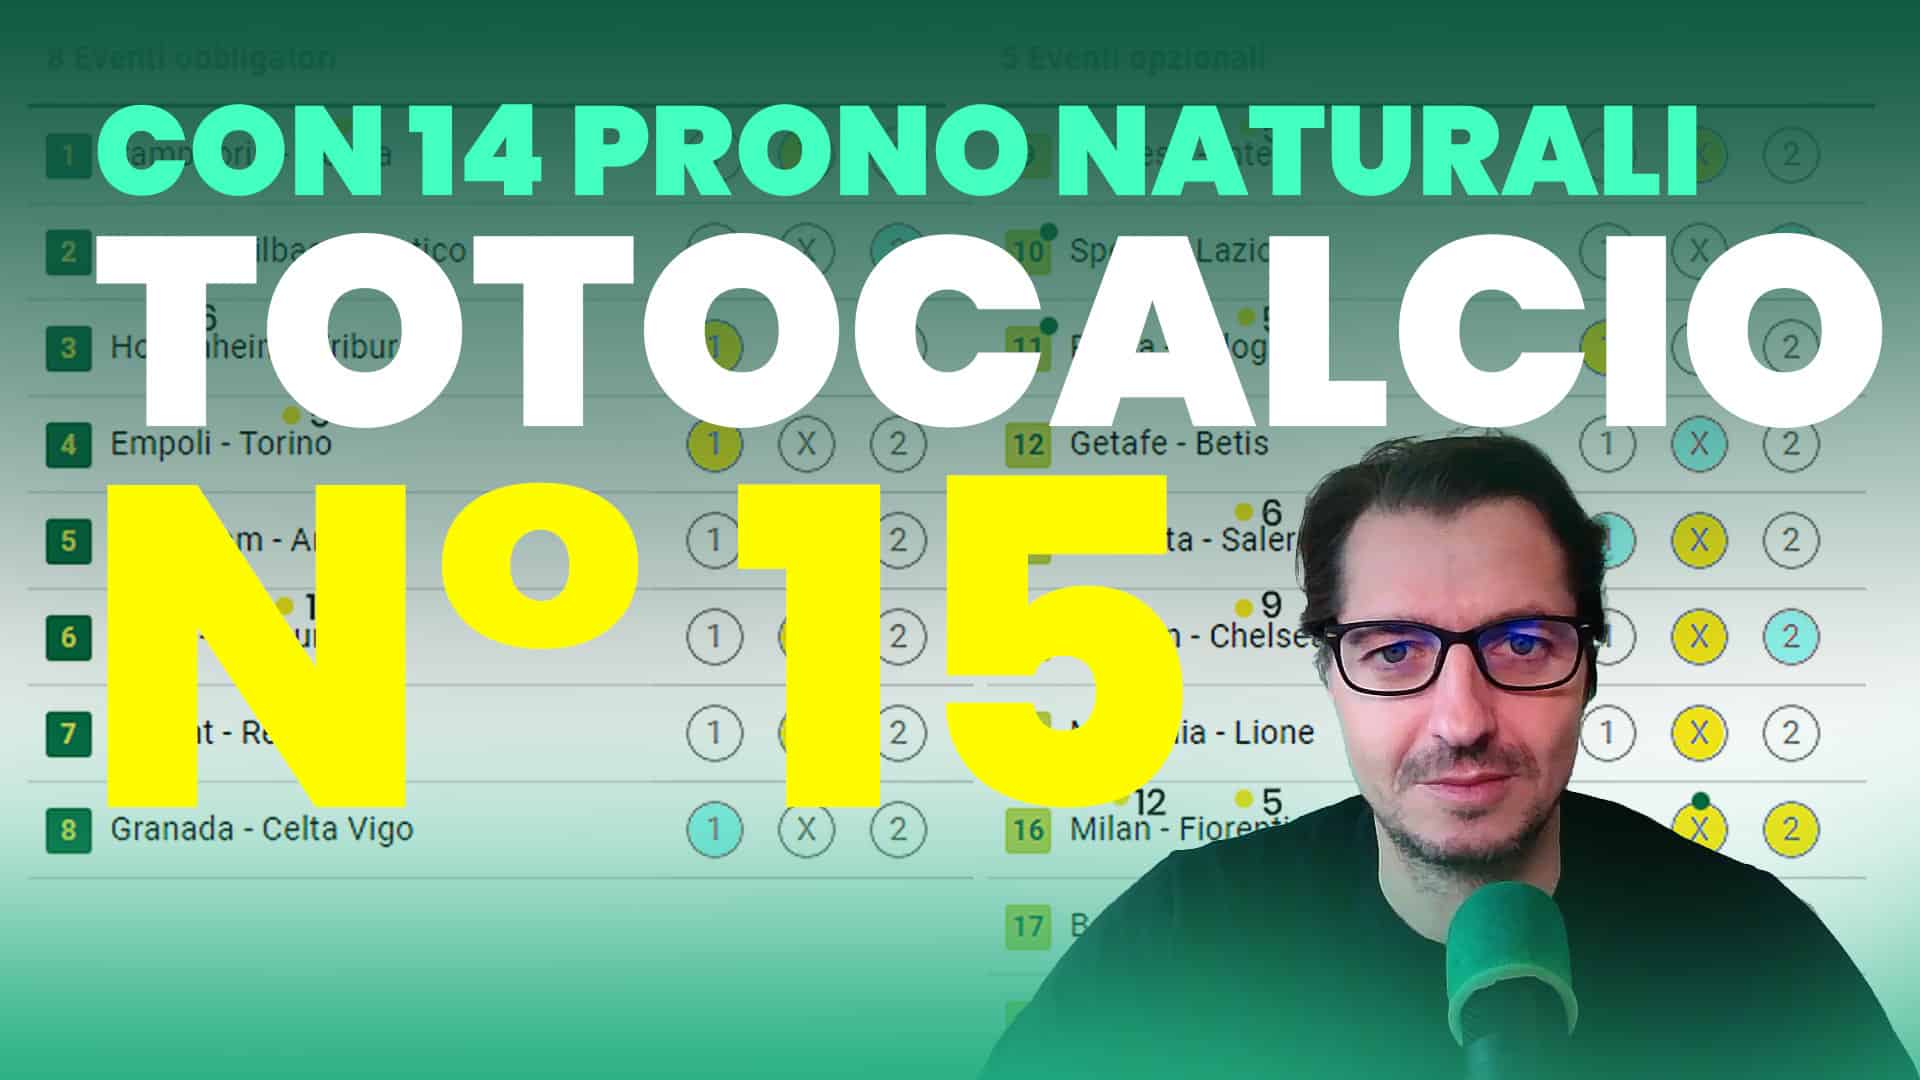 Pronostici-Naturali-Video-Totocalcio-Pre-Partite-Concorso-15-001.jpg